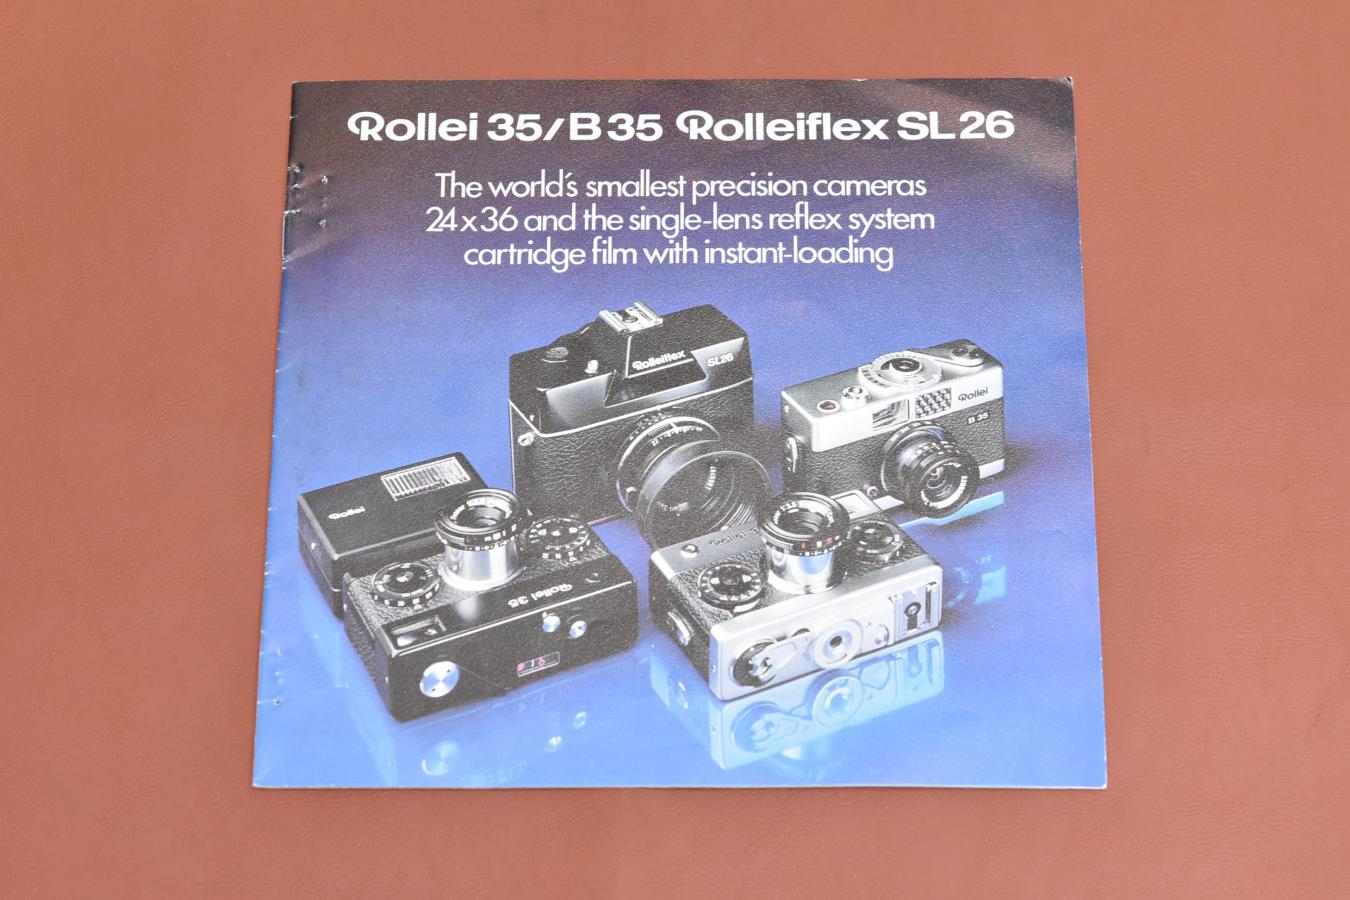 【絶版カタログ】Rollei 35/B35 Rolleiflex SL26 カタログ